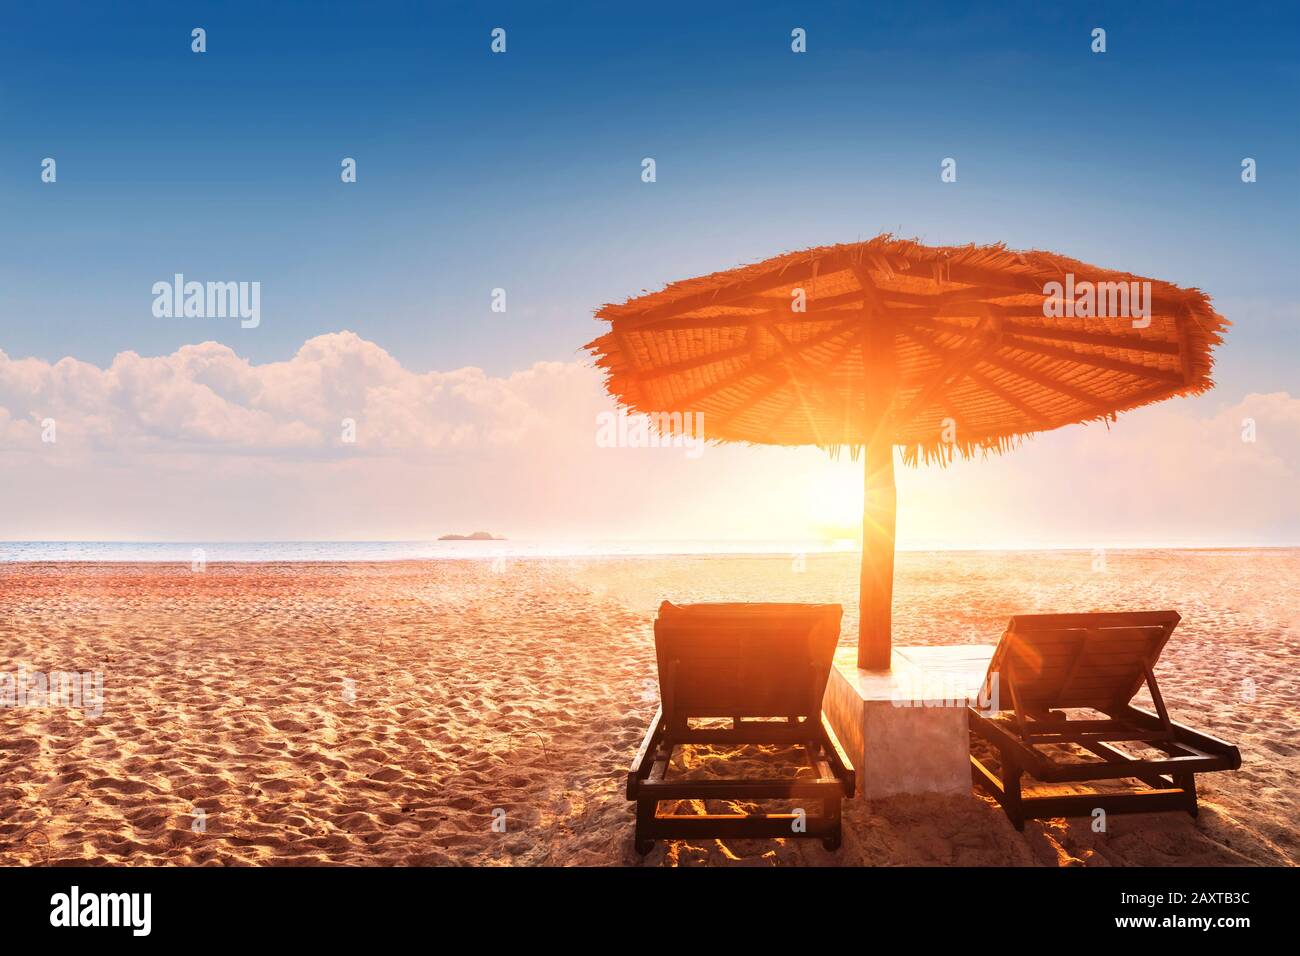 Sonnenschirm und Sonnenliegen am leeren tropischen Strand bei Sonnenuntergang mit schönen warmen Farben, Sommerurlaub Urlaubsziel Hotelresort Landschaft Stockfoto